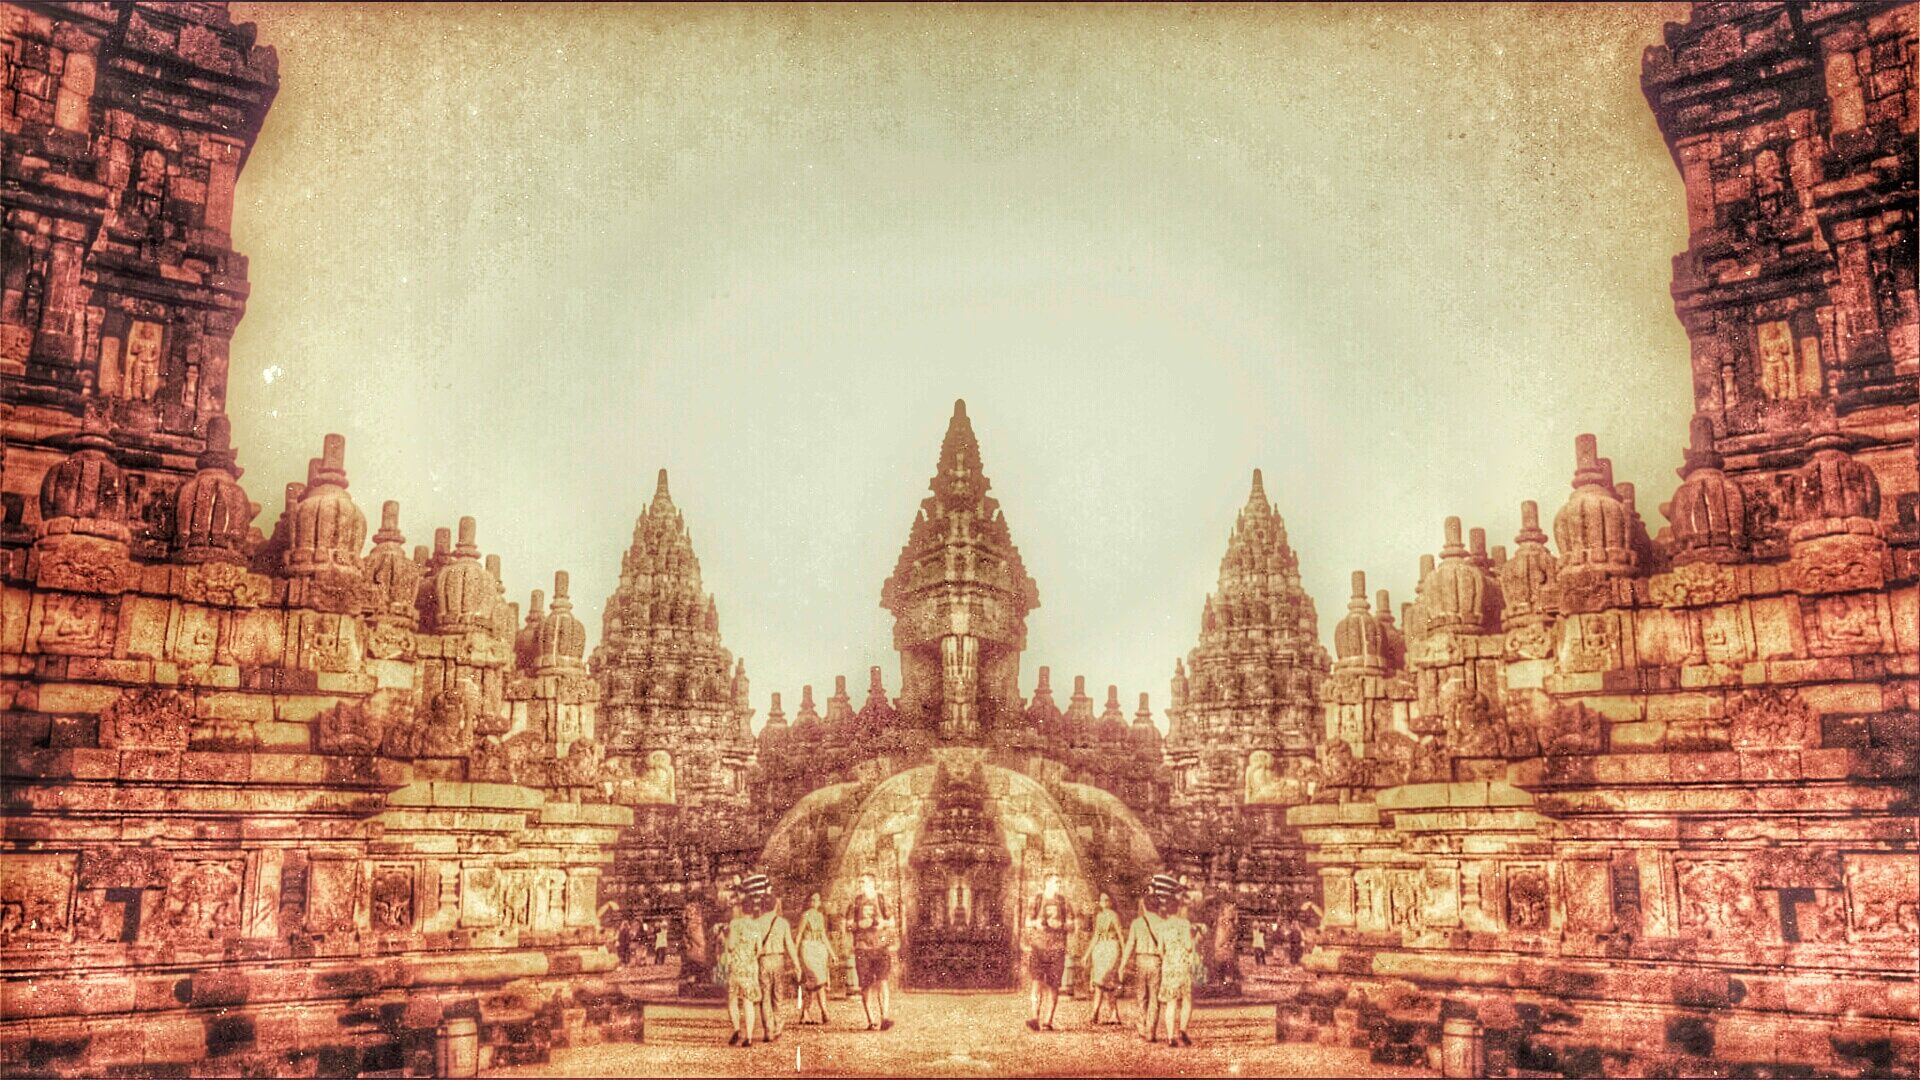 372096 скачать обои религиозные, храм прамбанан, индуистский храм, индонезия, ява (индонезия), храмы - заставки и картинки бесплатно